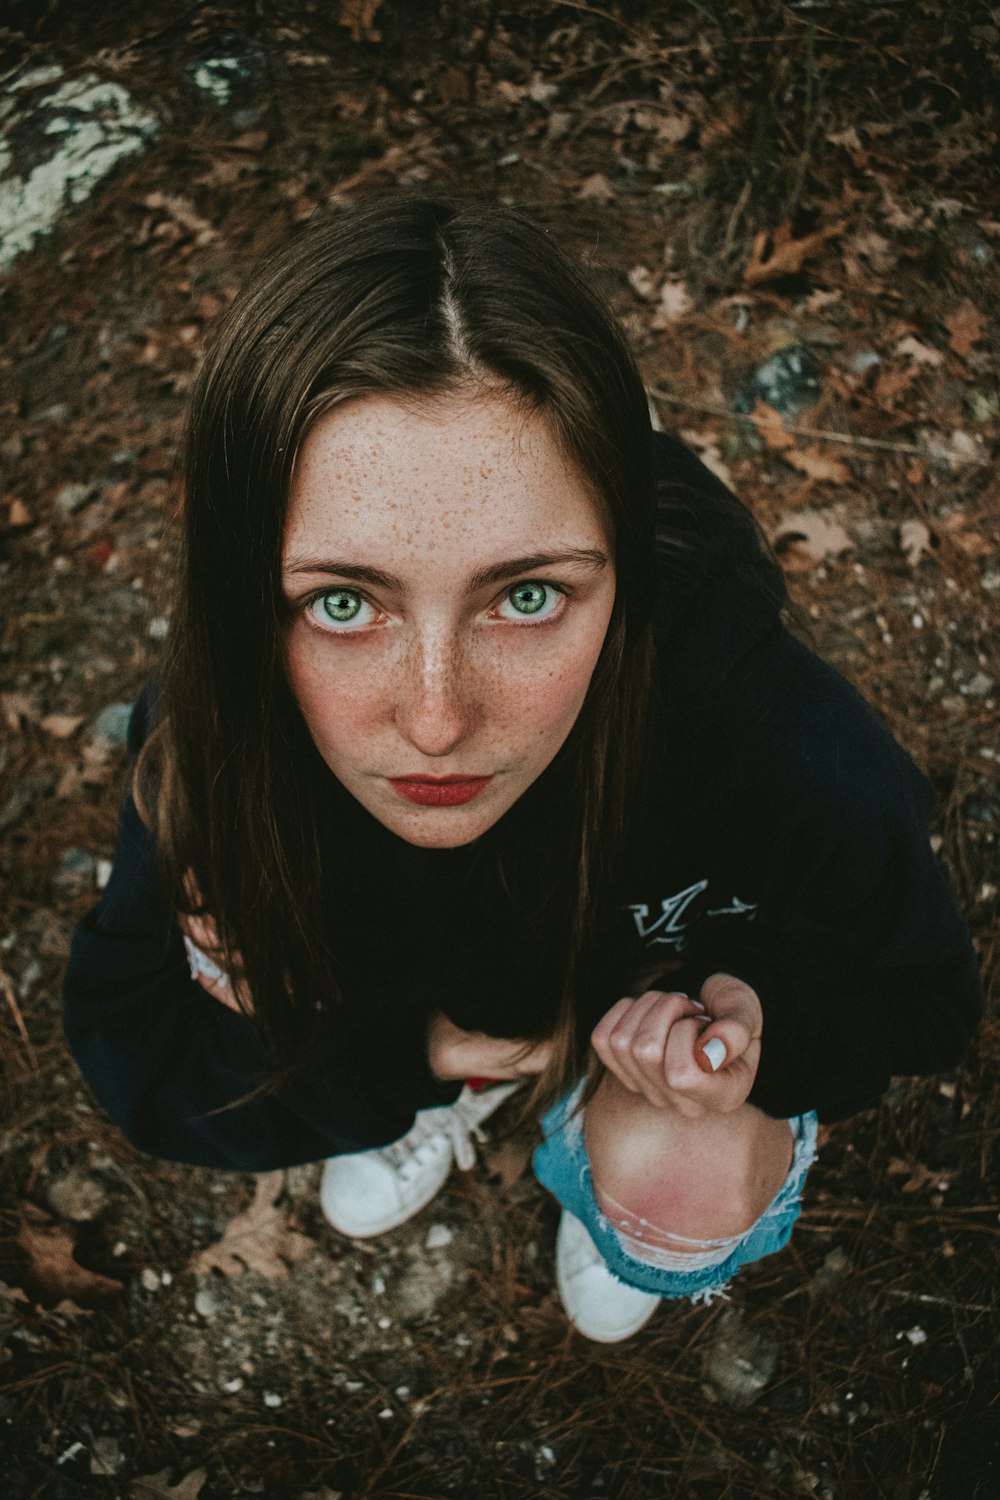 Una donna con i capelli lentigginosi e gli occhi azzurri seduta a terra